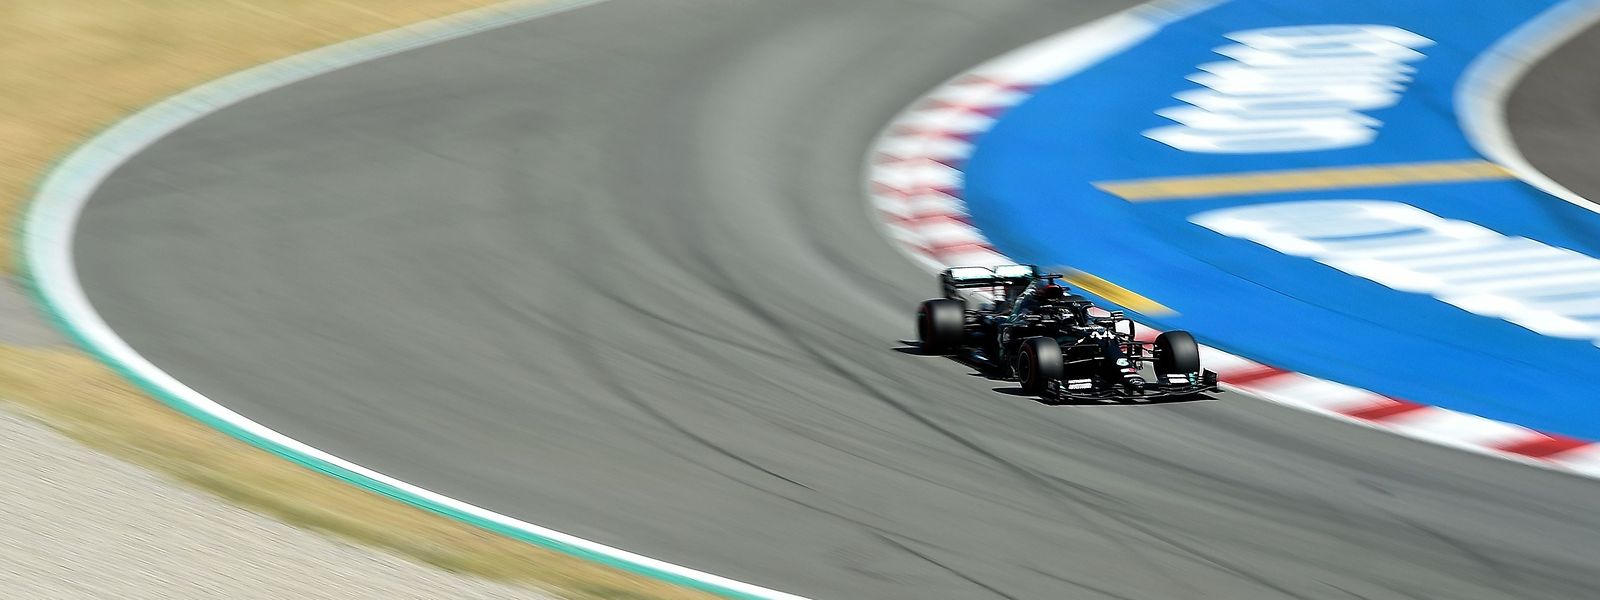 Der sechsmalige Formel-1-Weltmeister, Louis Hamilton, setzte sich am Samstag auf dem Circuit de Barcelona-Catalunya vor seinem Mercedes-Teamkollegen Valtteri Bottas durch. 